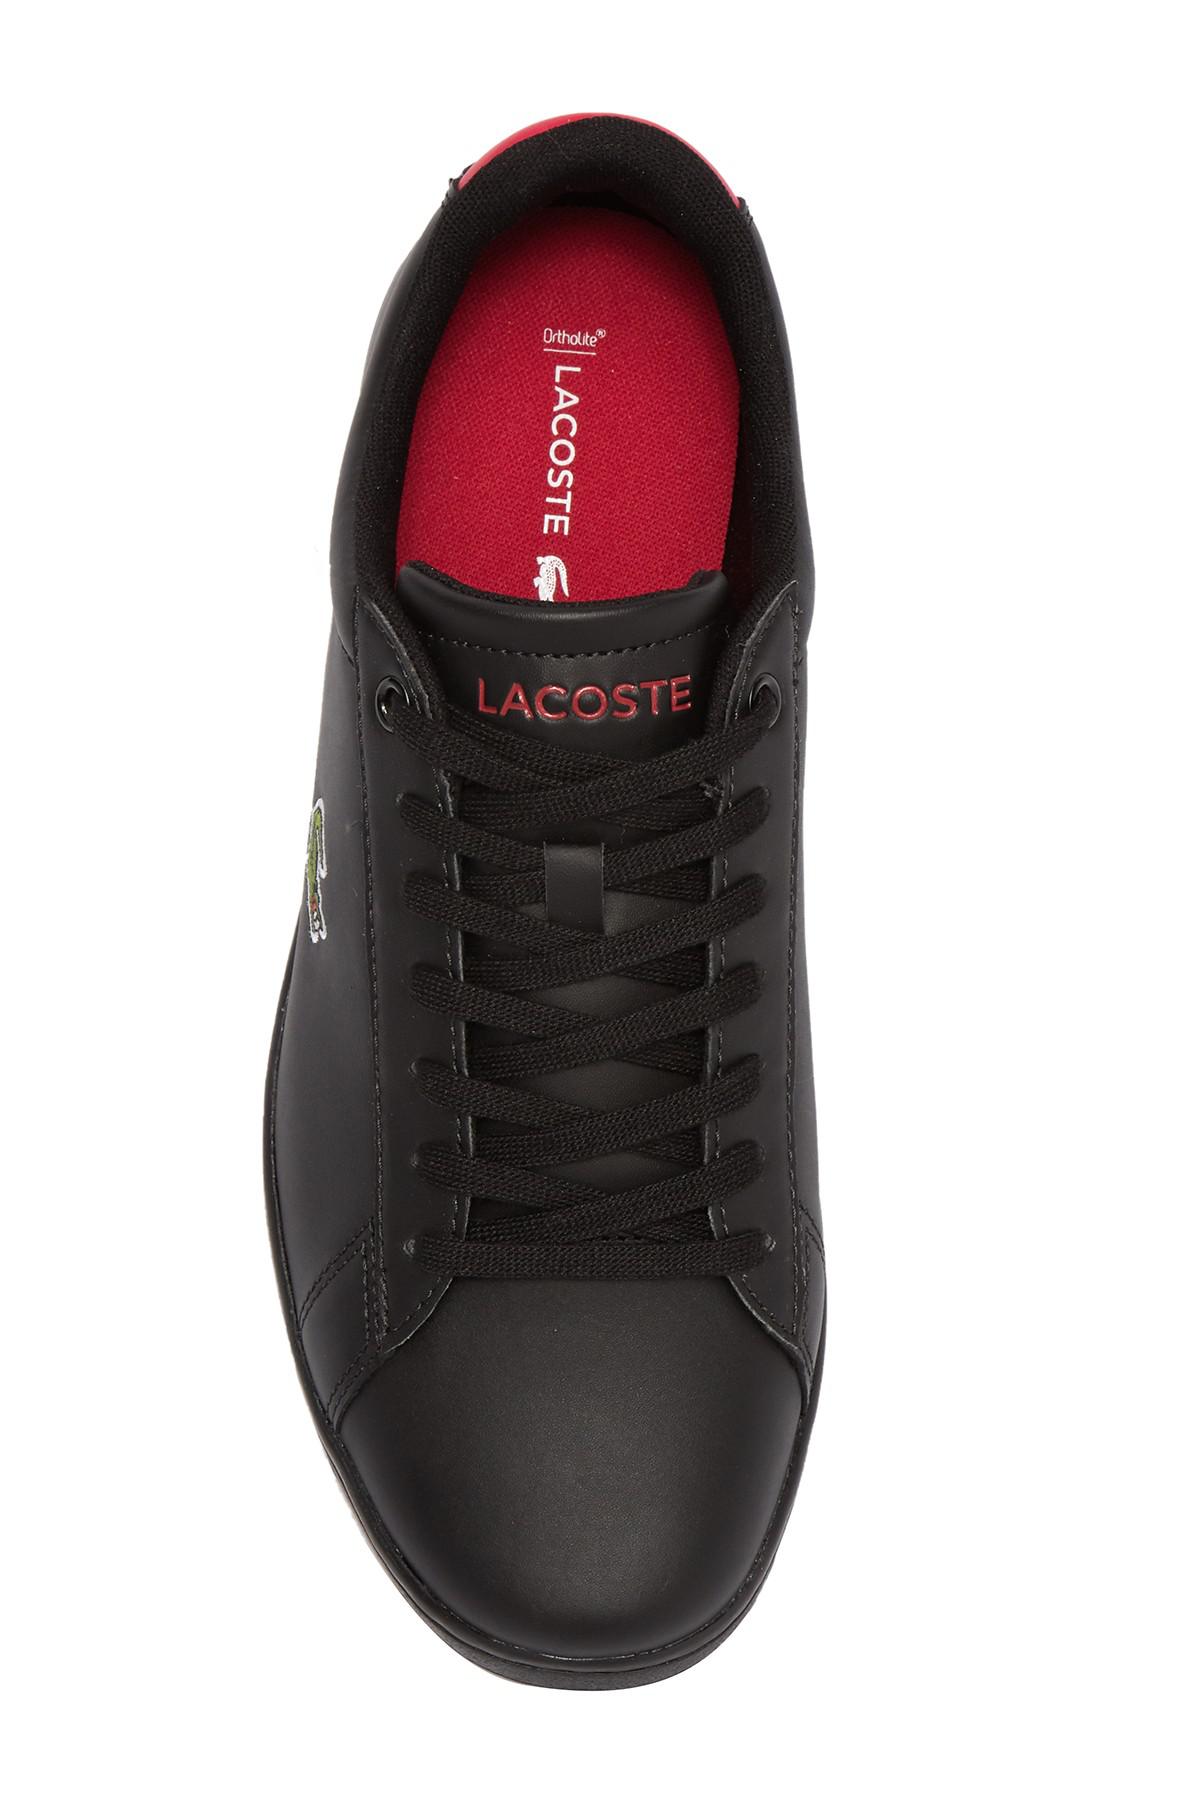 lacoste hydez 318 1 sneaker